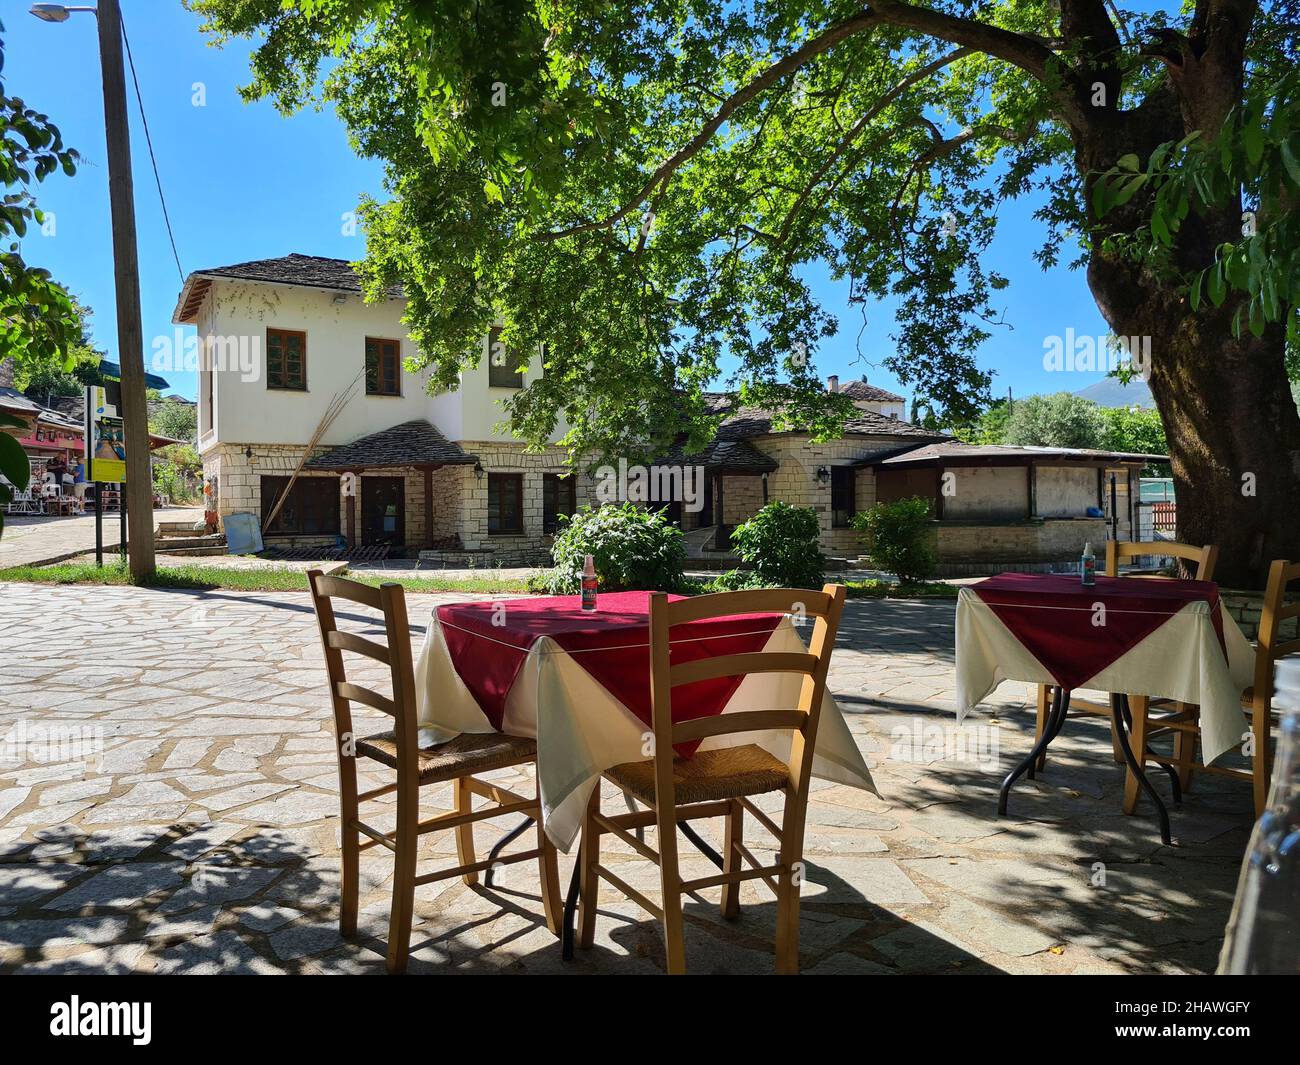 Ioannina, Griechenland - 27. Juni 2021: Tisch mit Spray zur Desinfektion während der Coronapandemie im Gartenbereich eines Restaurants Stockfoto